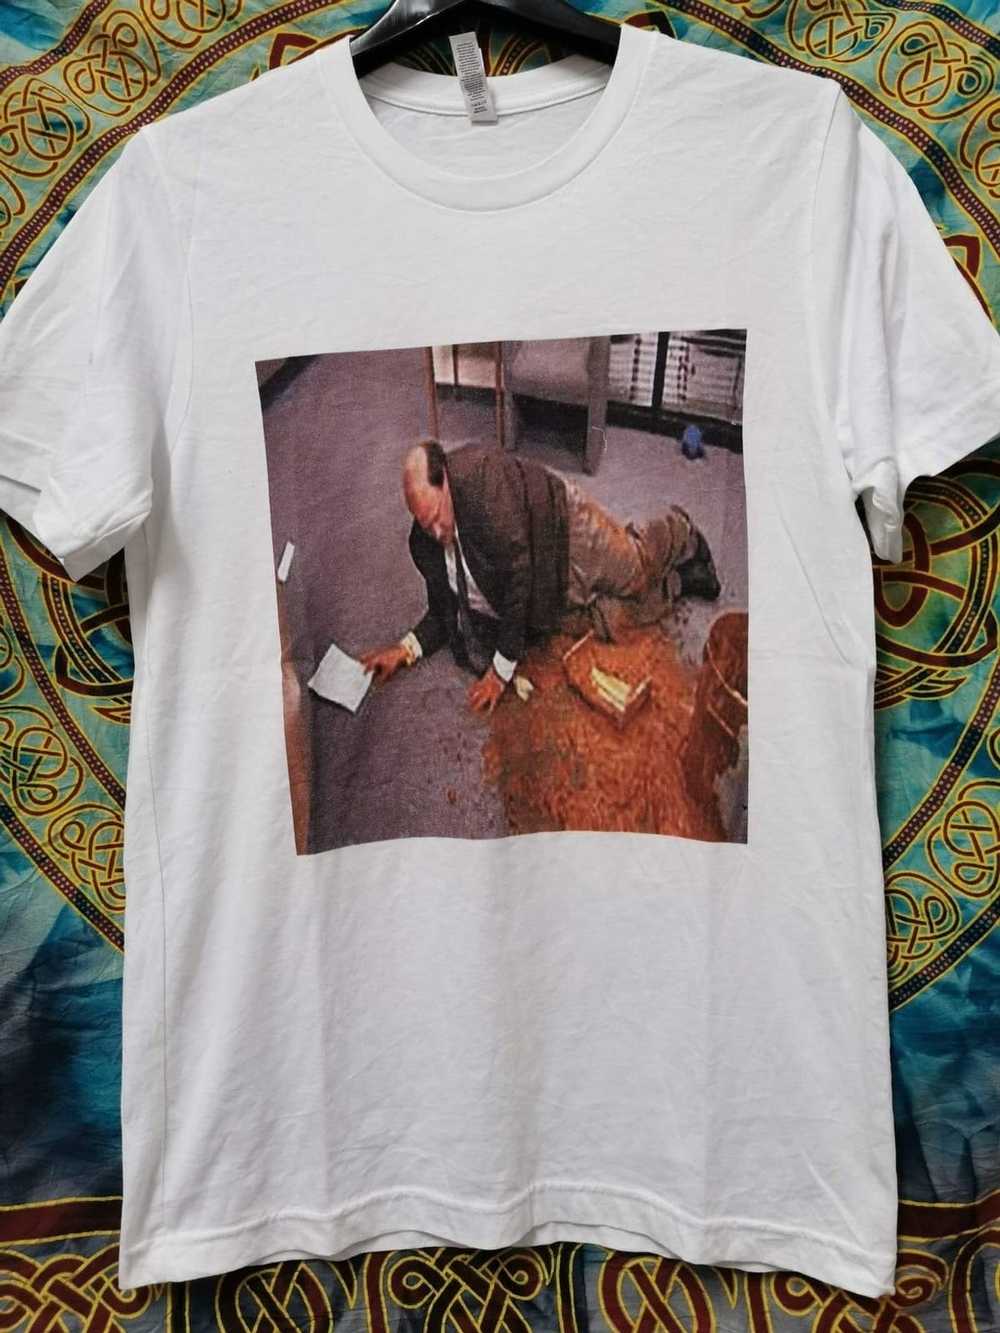 Band Tees × Movie × Streetwear Poop man T-shirt - image 2